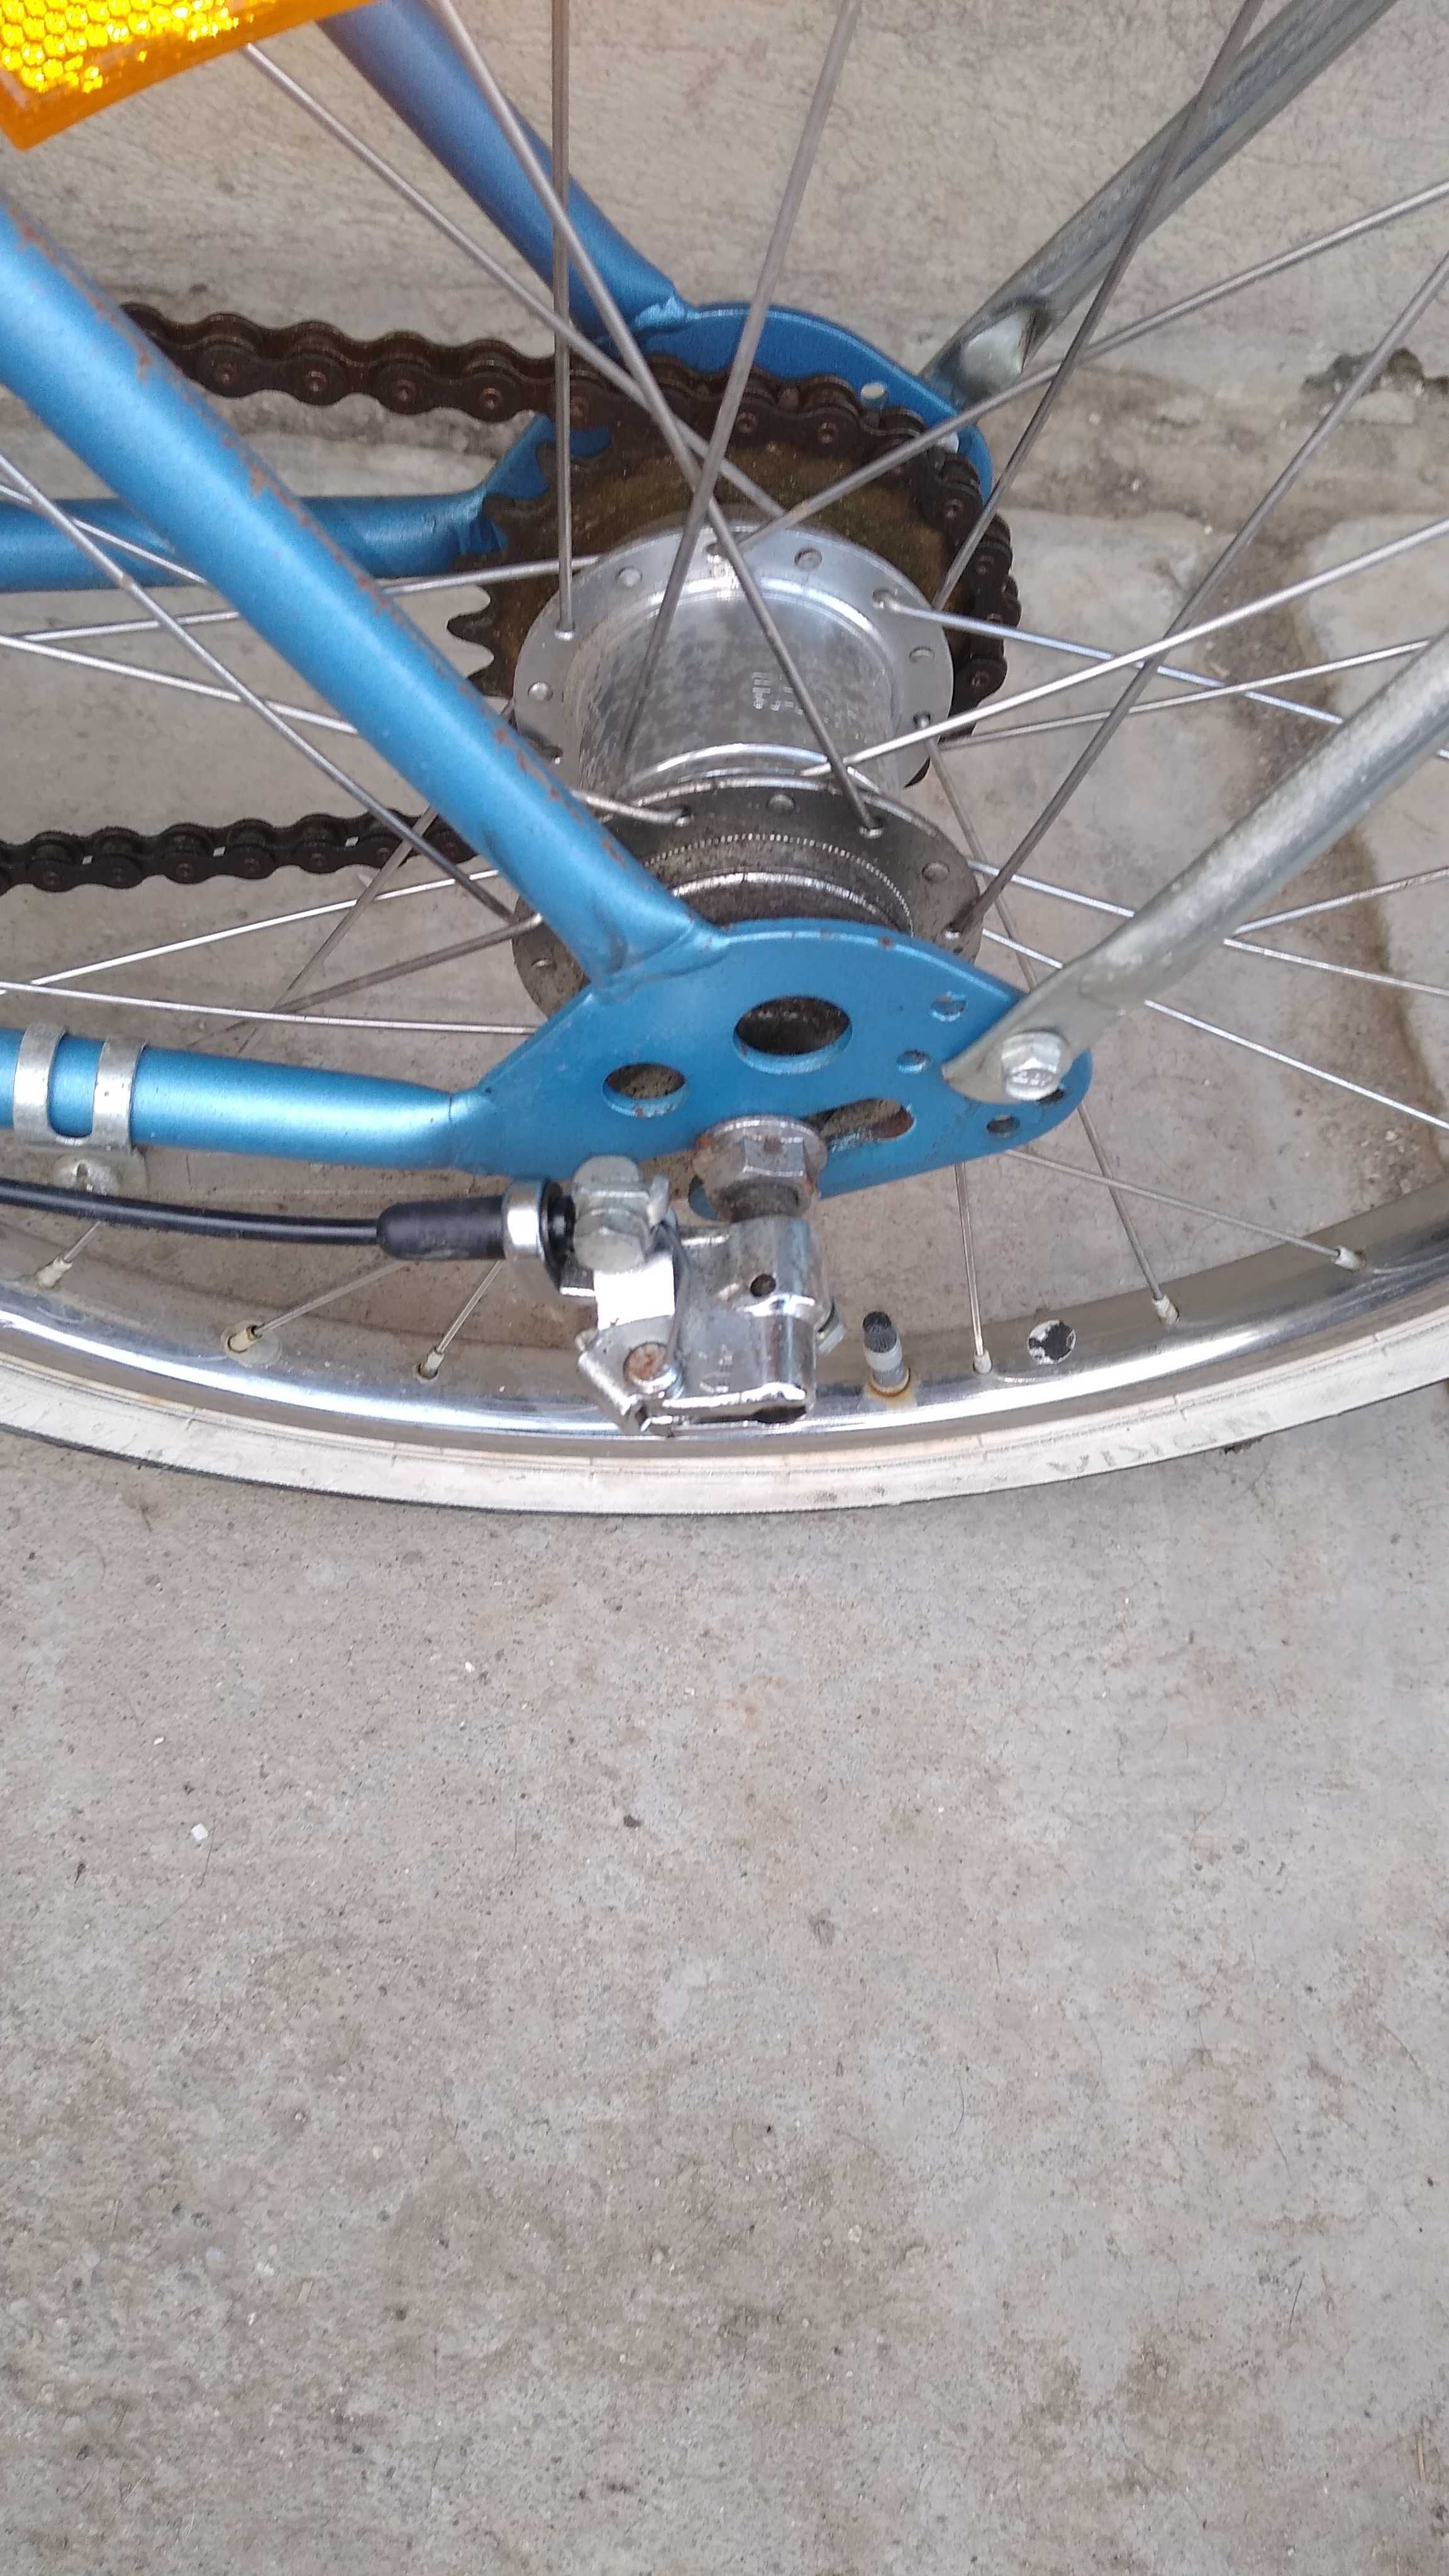 Tricicleta,bicicleta cu 3 roti